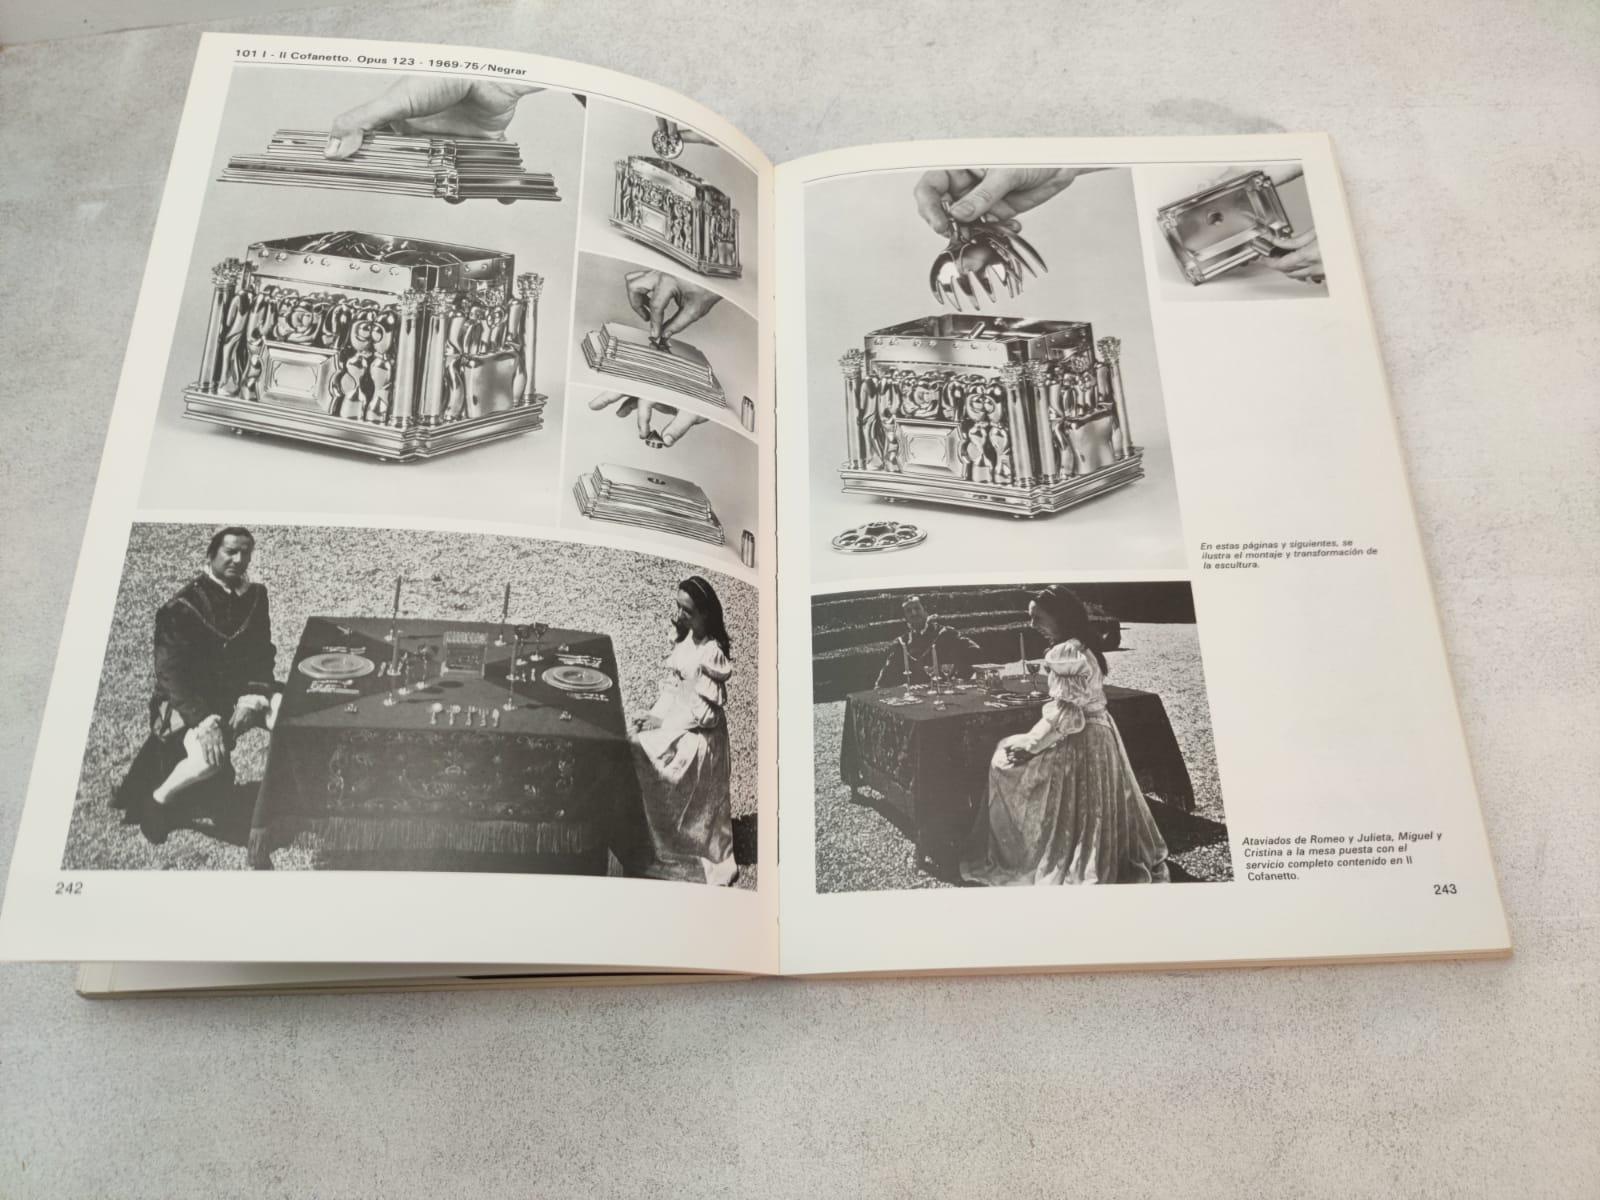 Paper Exclusive Book Antológica Berrocal 1955- 84 Sculptures & Work of Miguel Berrocal